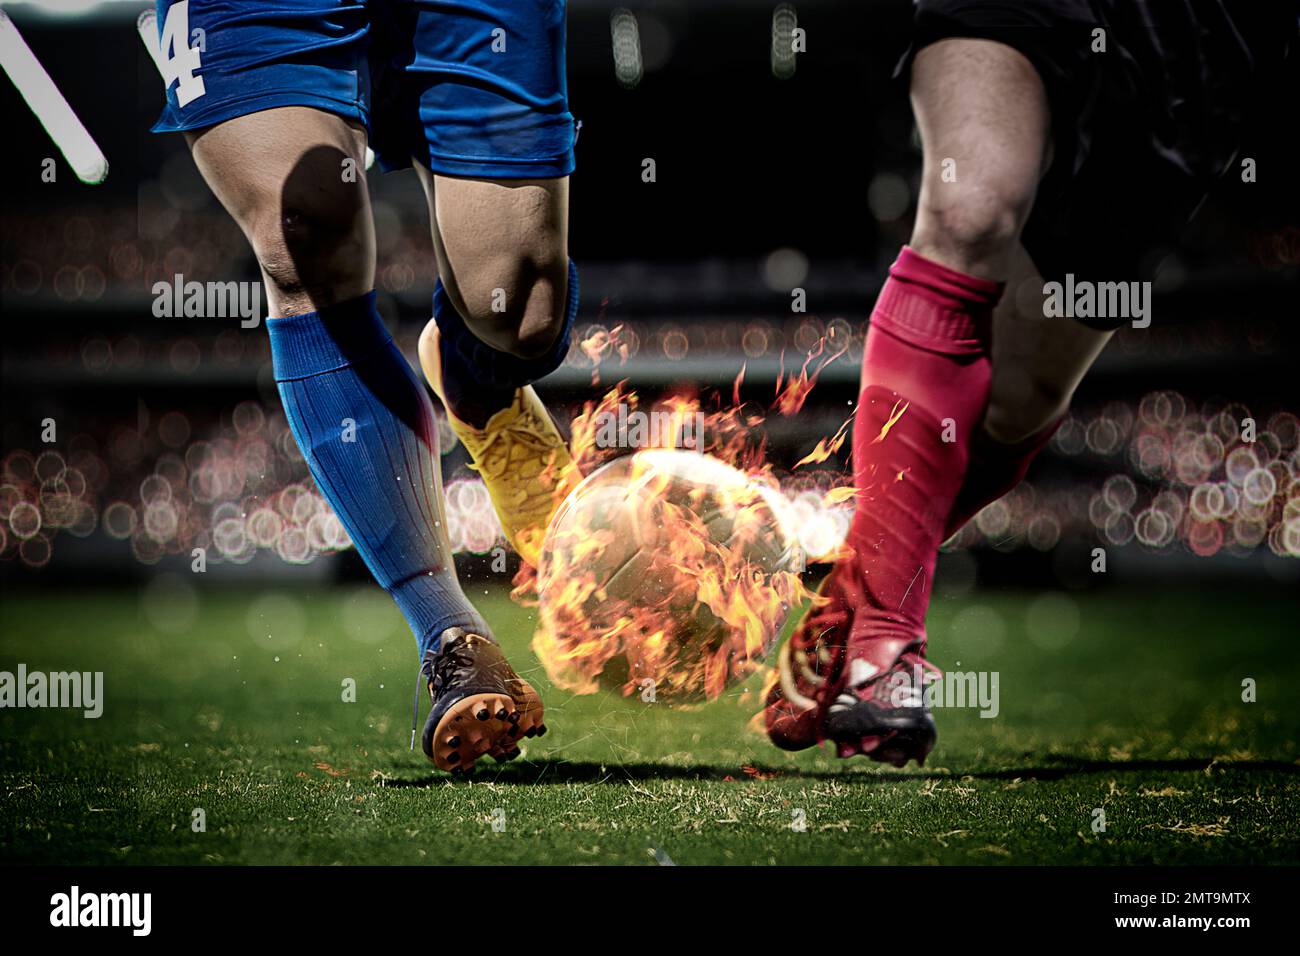 CG imagen de los jugadores de fútbol golpeando la pelota con fuego Foto de stock